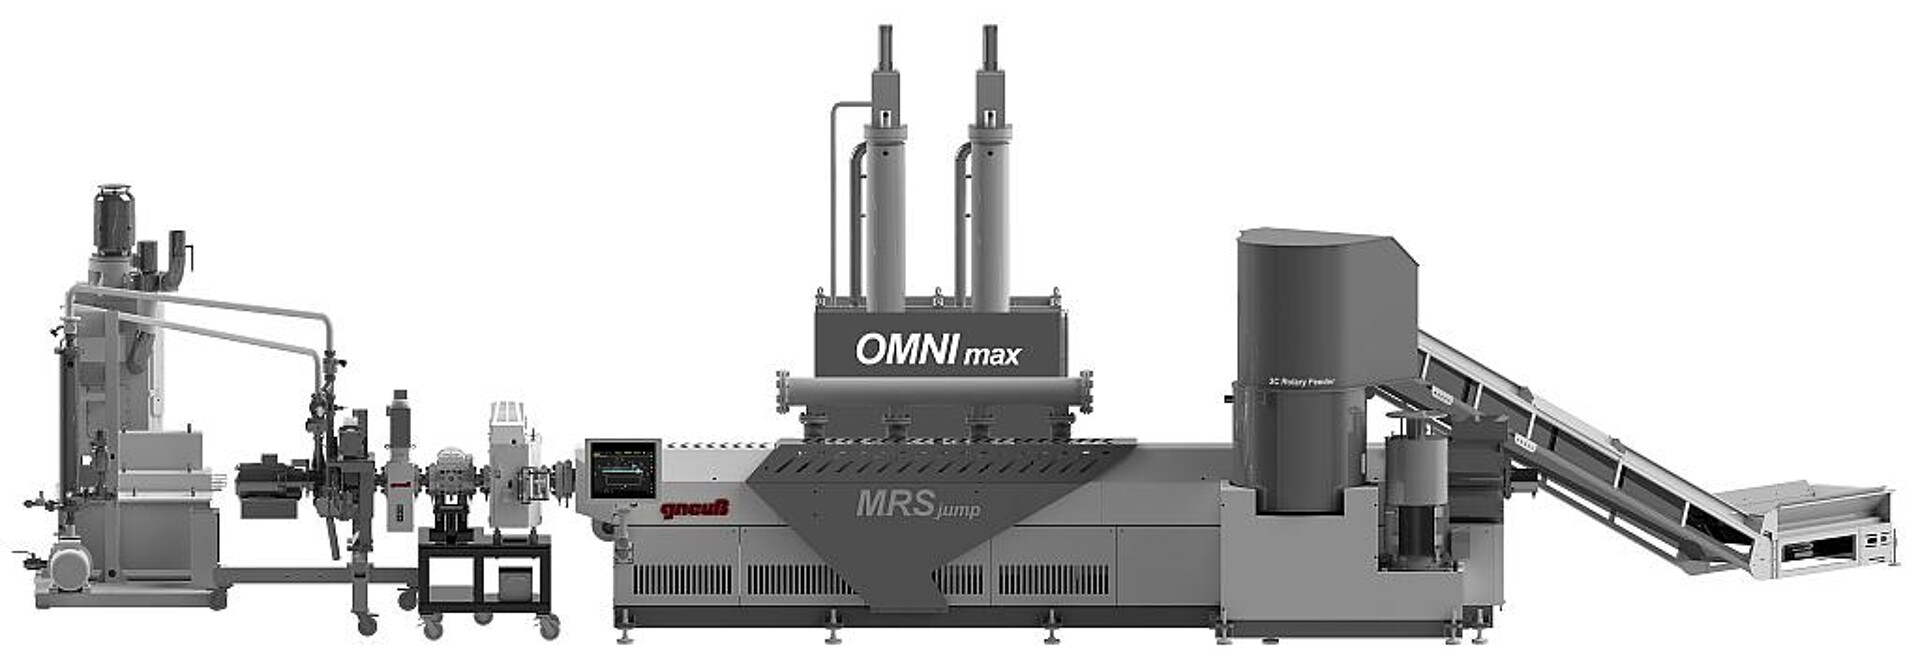 Die Omnimax-Recyclinganlage enthält das MRSjump-Extrusionssystem, ein Rotary-Filtriersystem sowie einen 3C-Rotary-Feeder. (Foto: Gneuß)